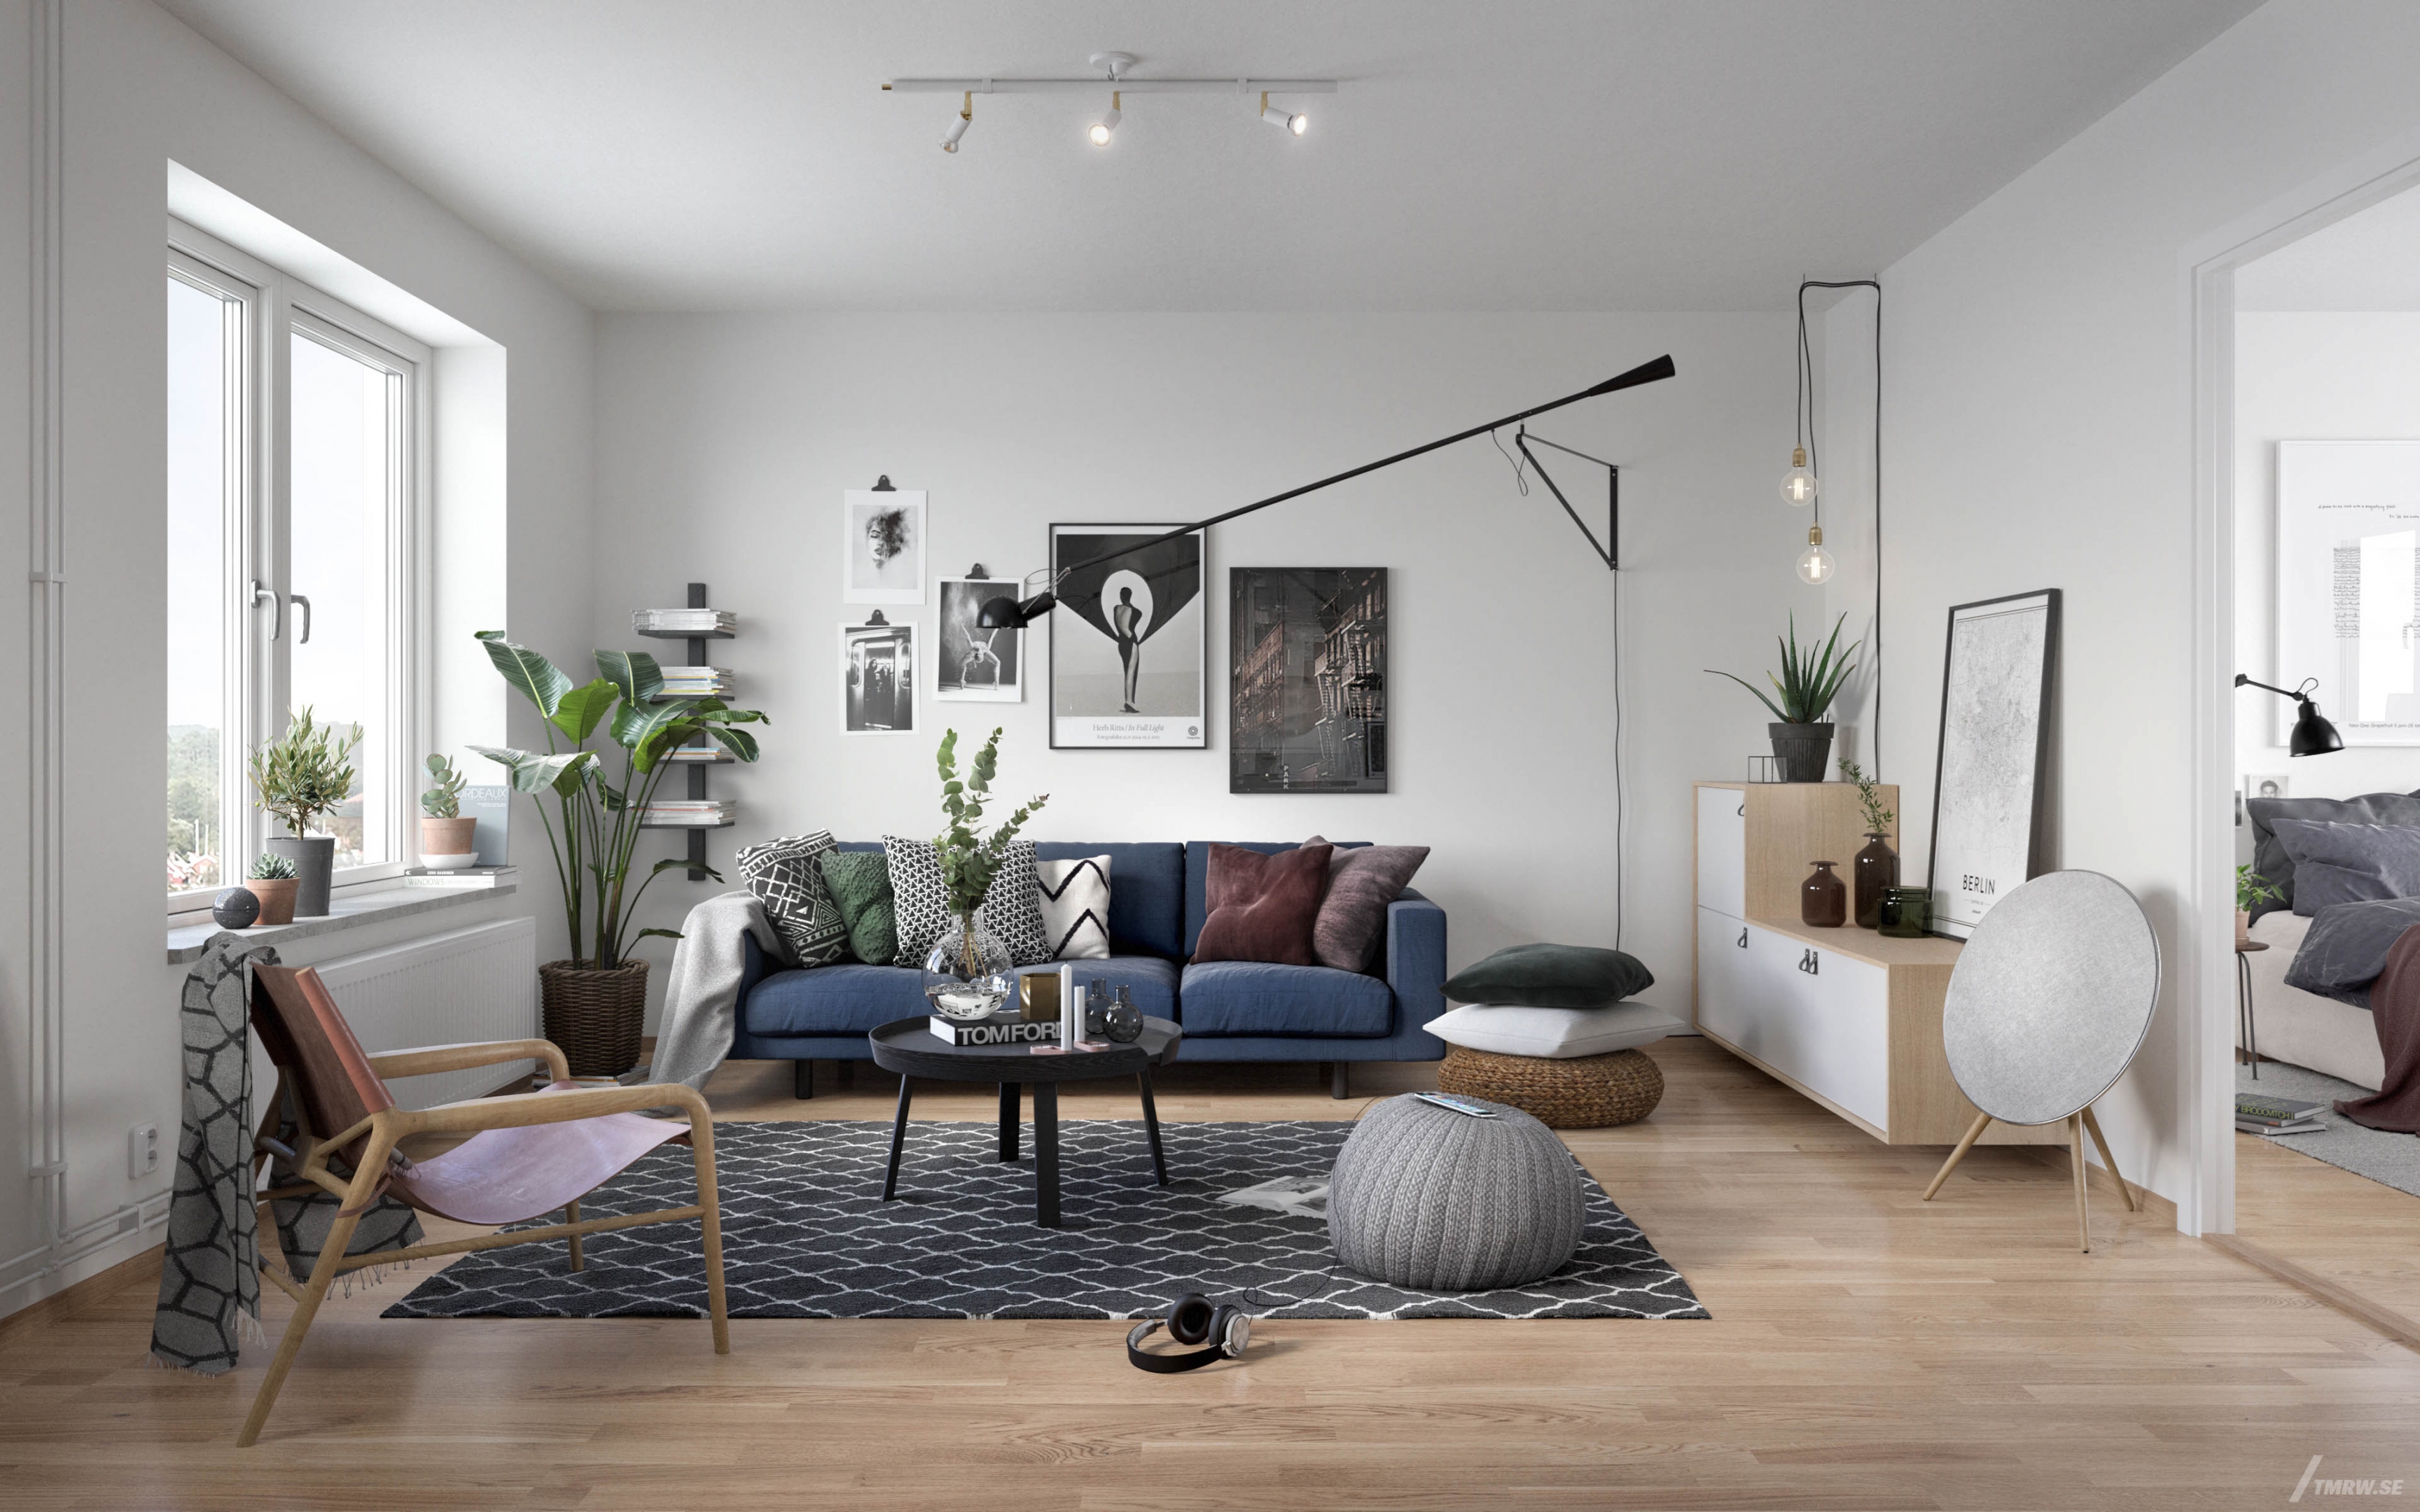 Architectural visualization of Tigerögafor for Riksbyggen, living room with modern furnitures